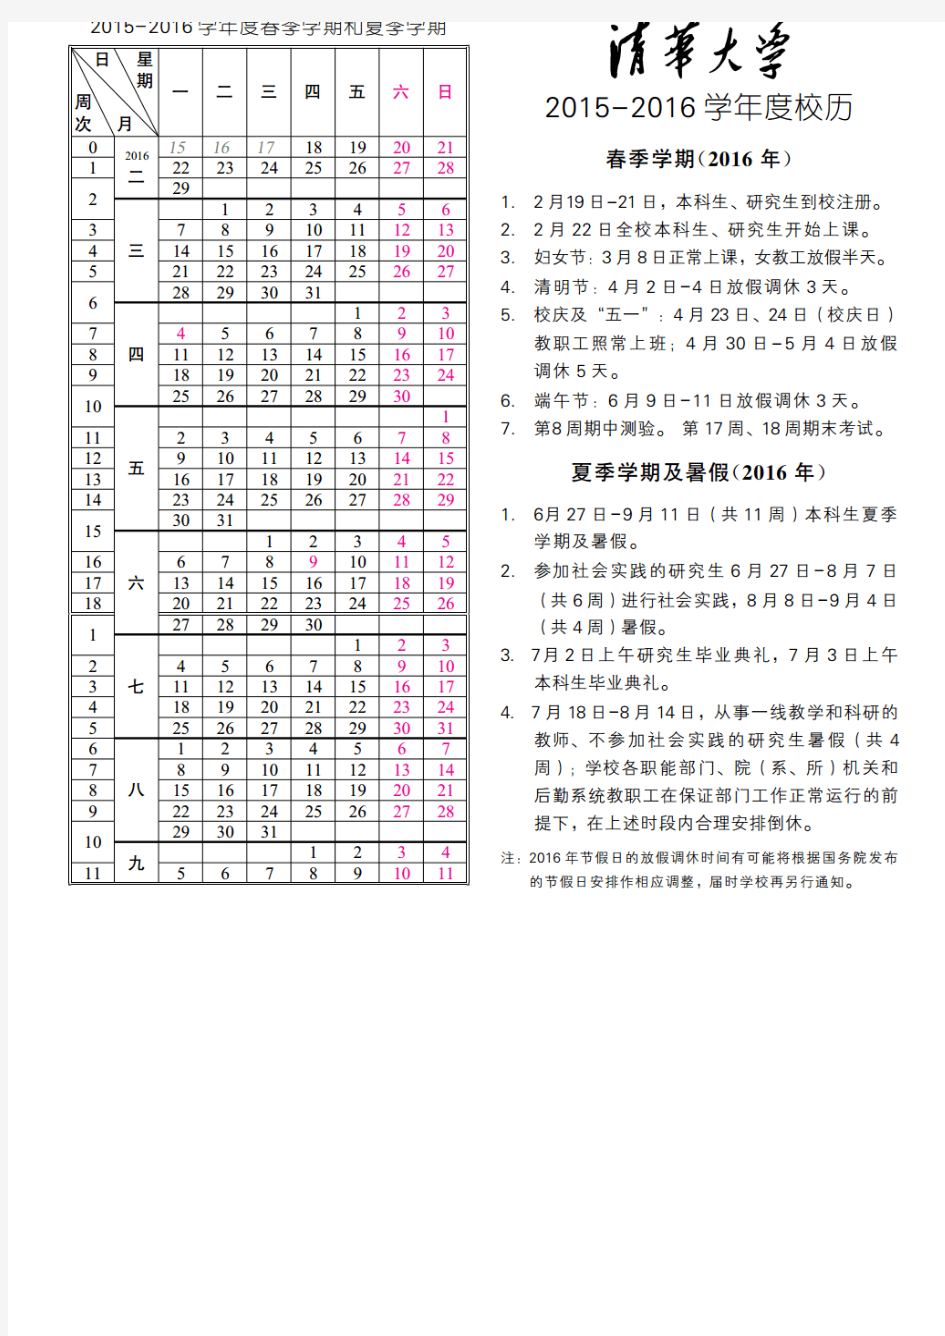 清华大学2015-2016学年度校历